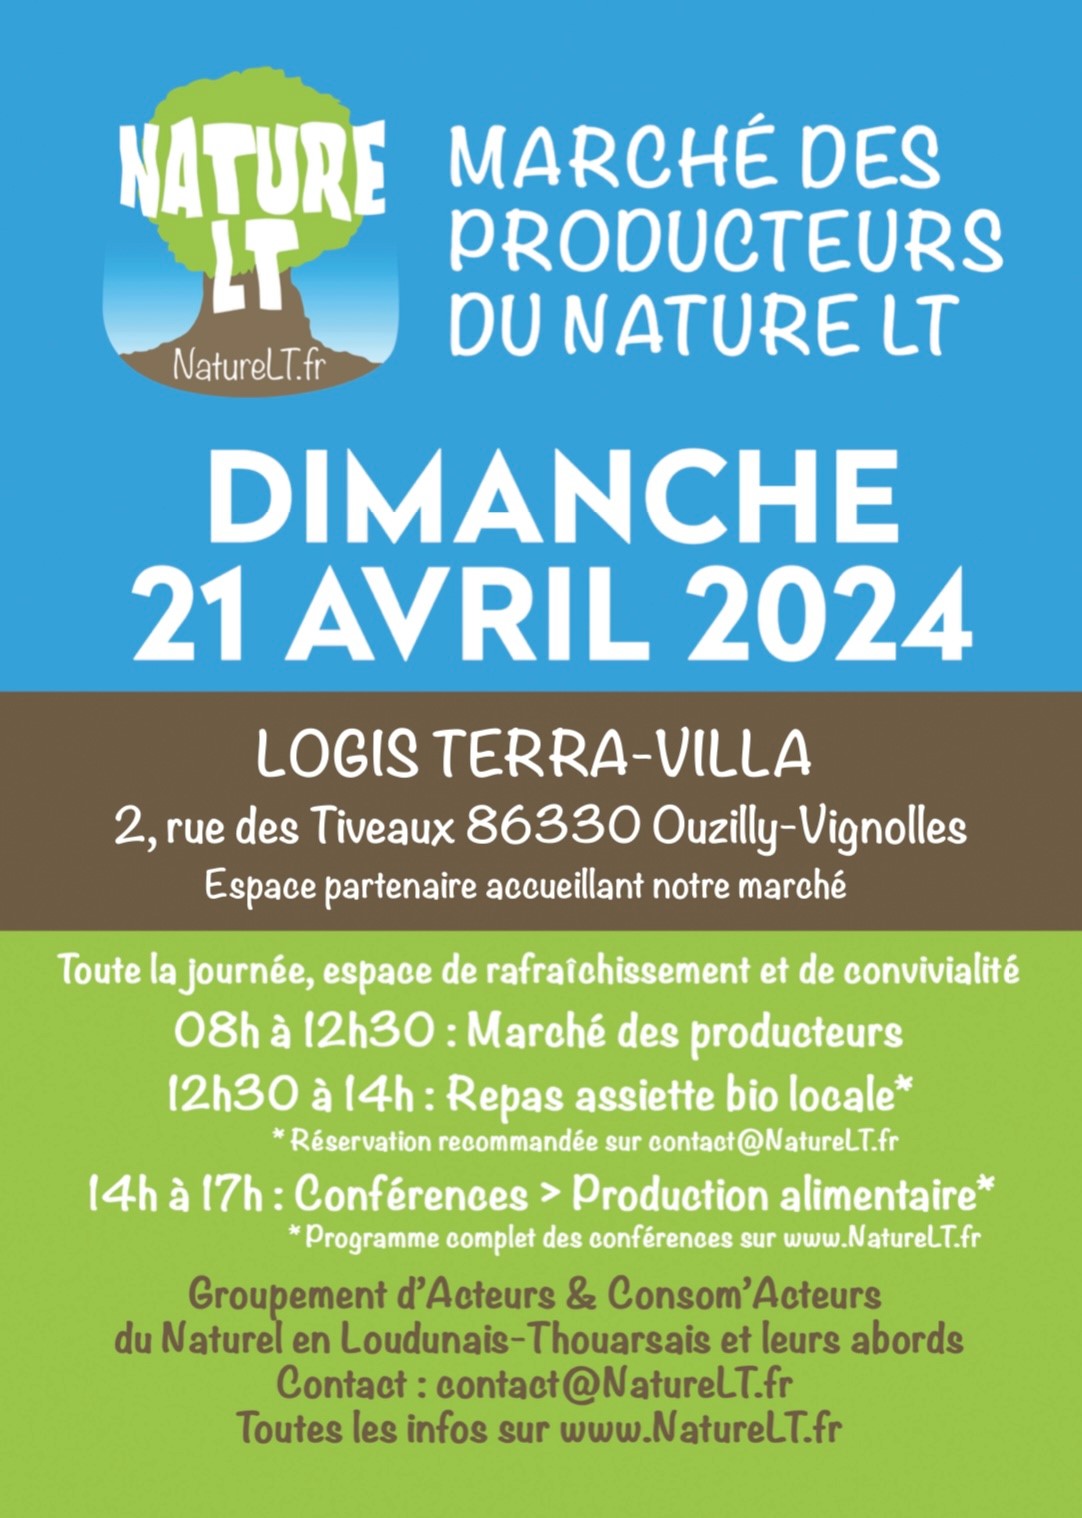 Marché des producteurs du NatureLT le Dimanche 21 Avril, logis Terra Villa 86330 Ouzilly-Vignolles